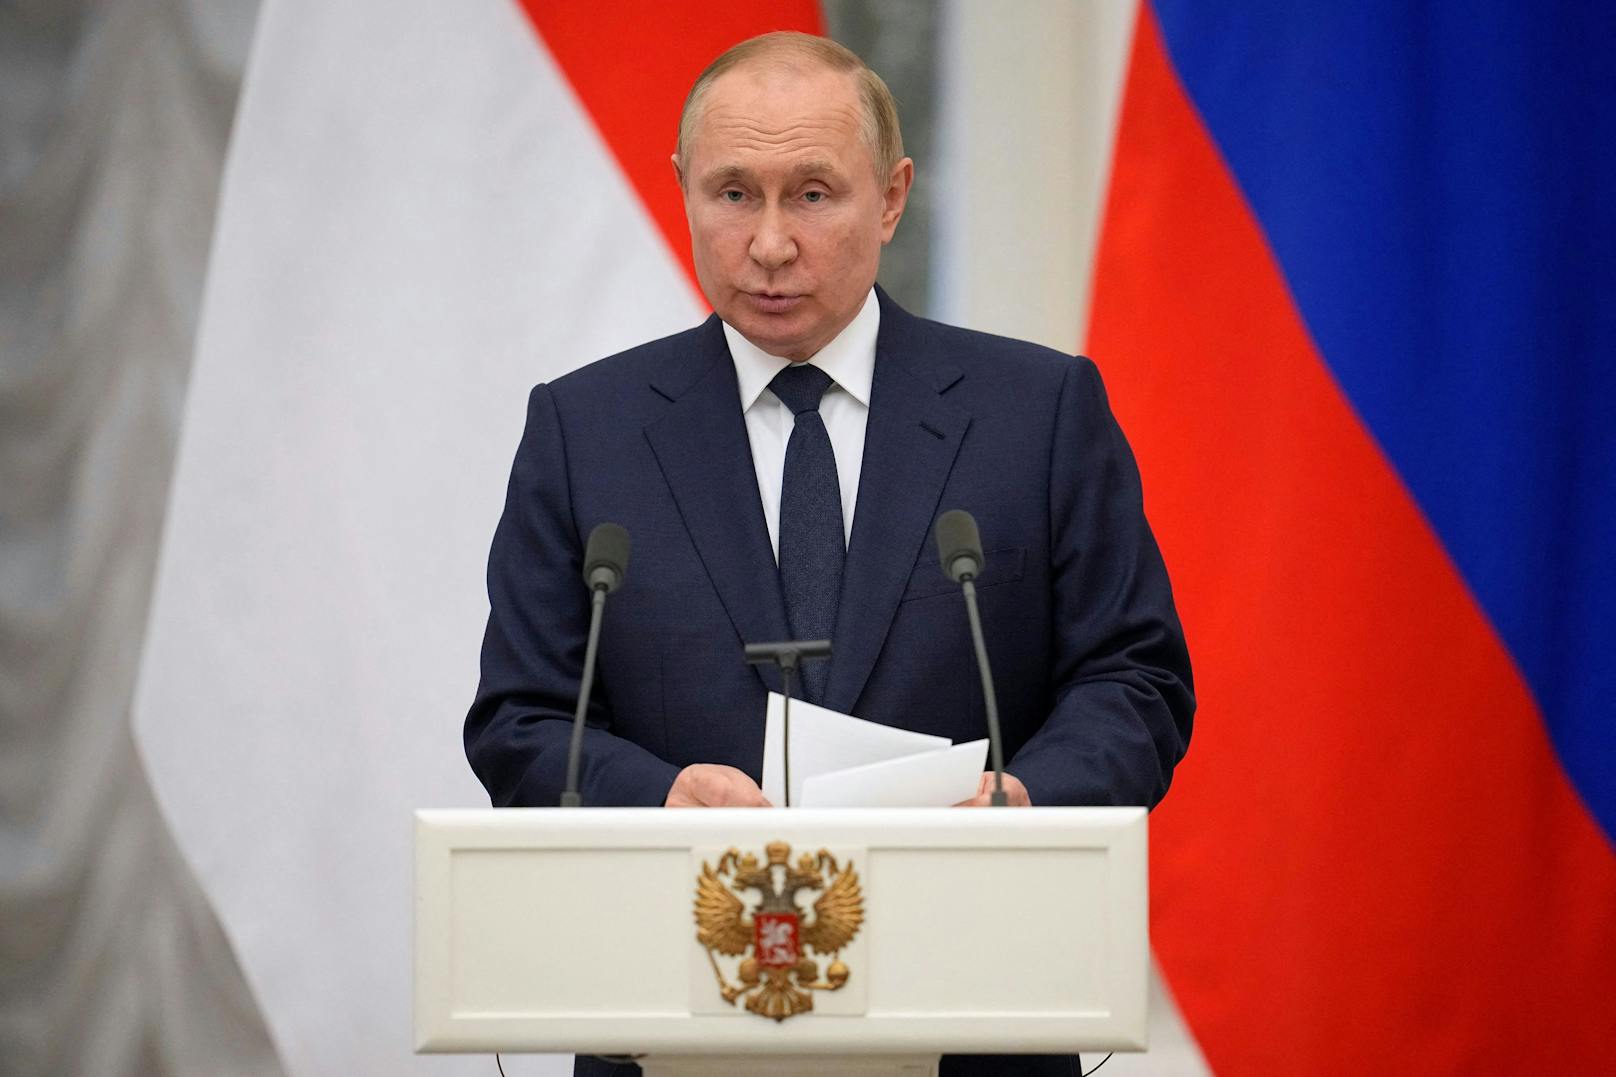 Seit Monaten ranken sich Gerüchte um Wladimir Putins Gesundheit. Nun lässt ein Experte aufhorchen.